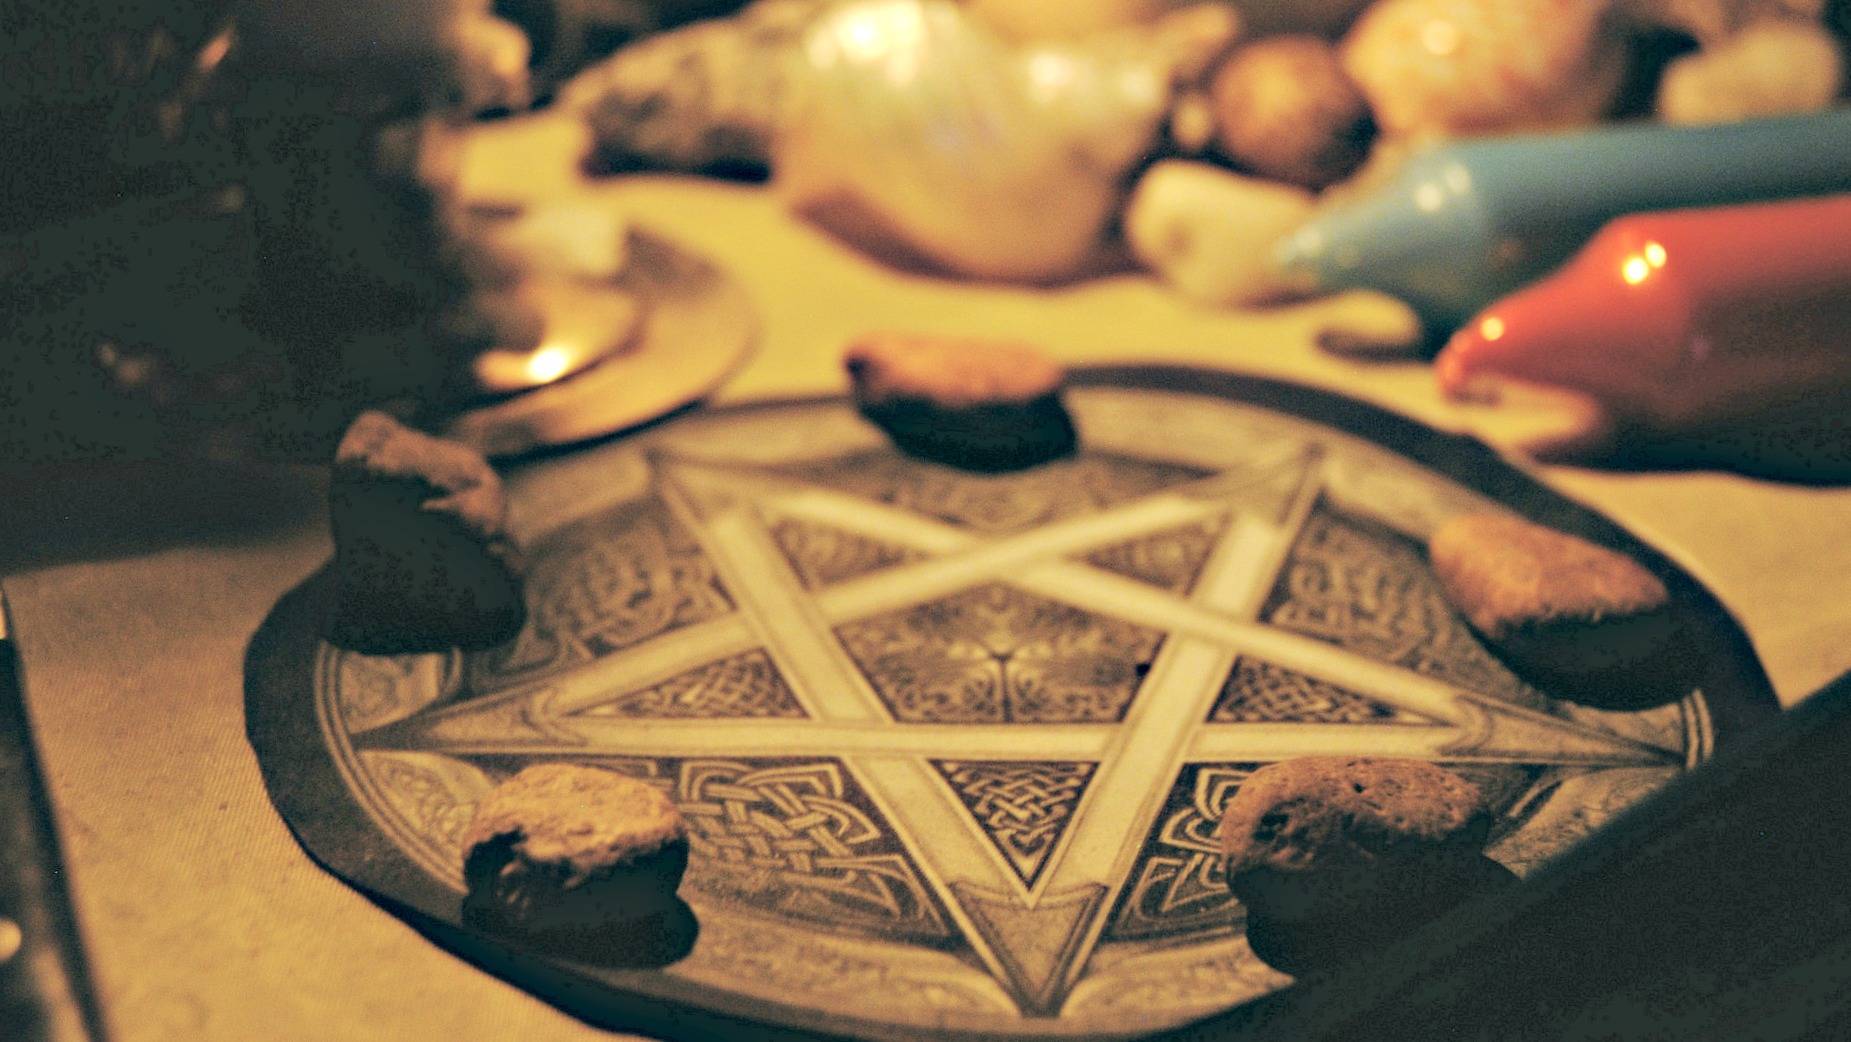 Les wiccans s'adonnent à la magie noire (Photo:Kali Bardi/Flickr/CC BY-NC-ND 2.0)